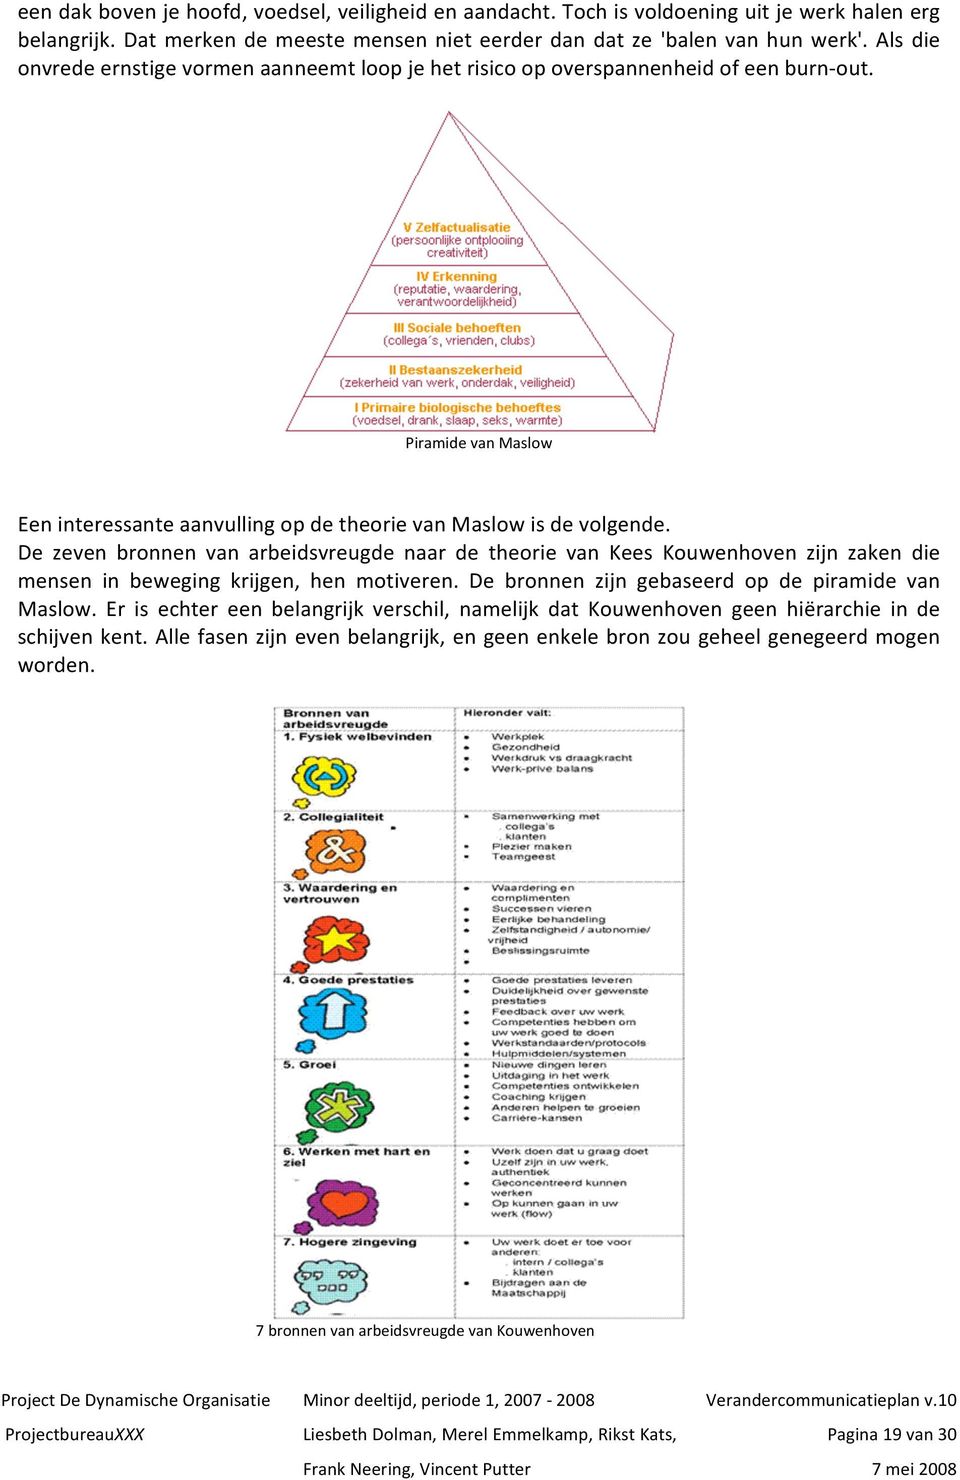 De zeven bronnen van arbeidsvreugde naar de theorie van Kees Kouwenhoven zijn zaken die mensen in beweging krijgen, hen motiveren. De bronnen zijn gebaseerd op de piramide van Maslow.